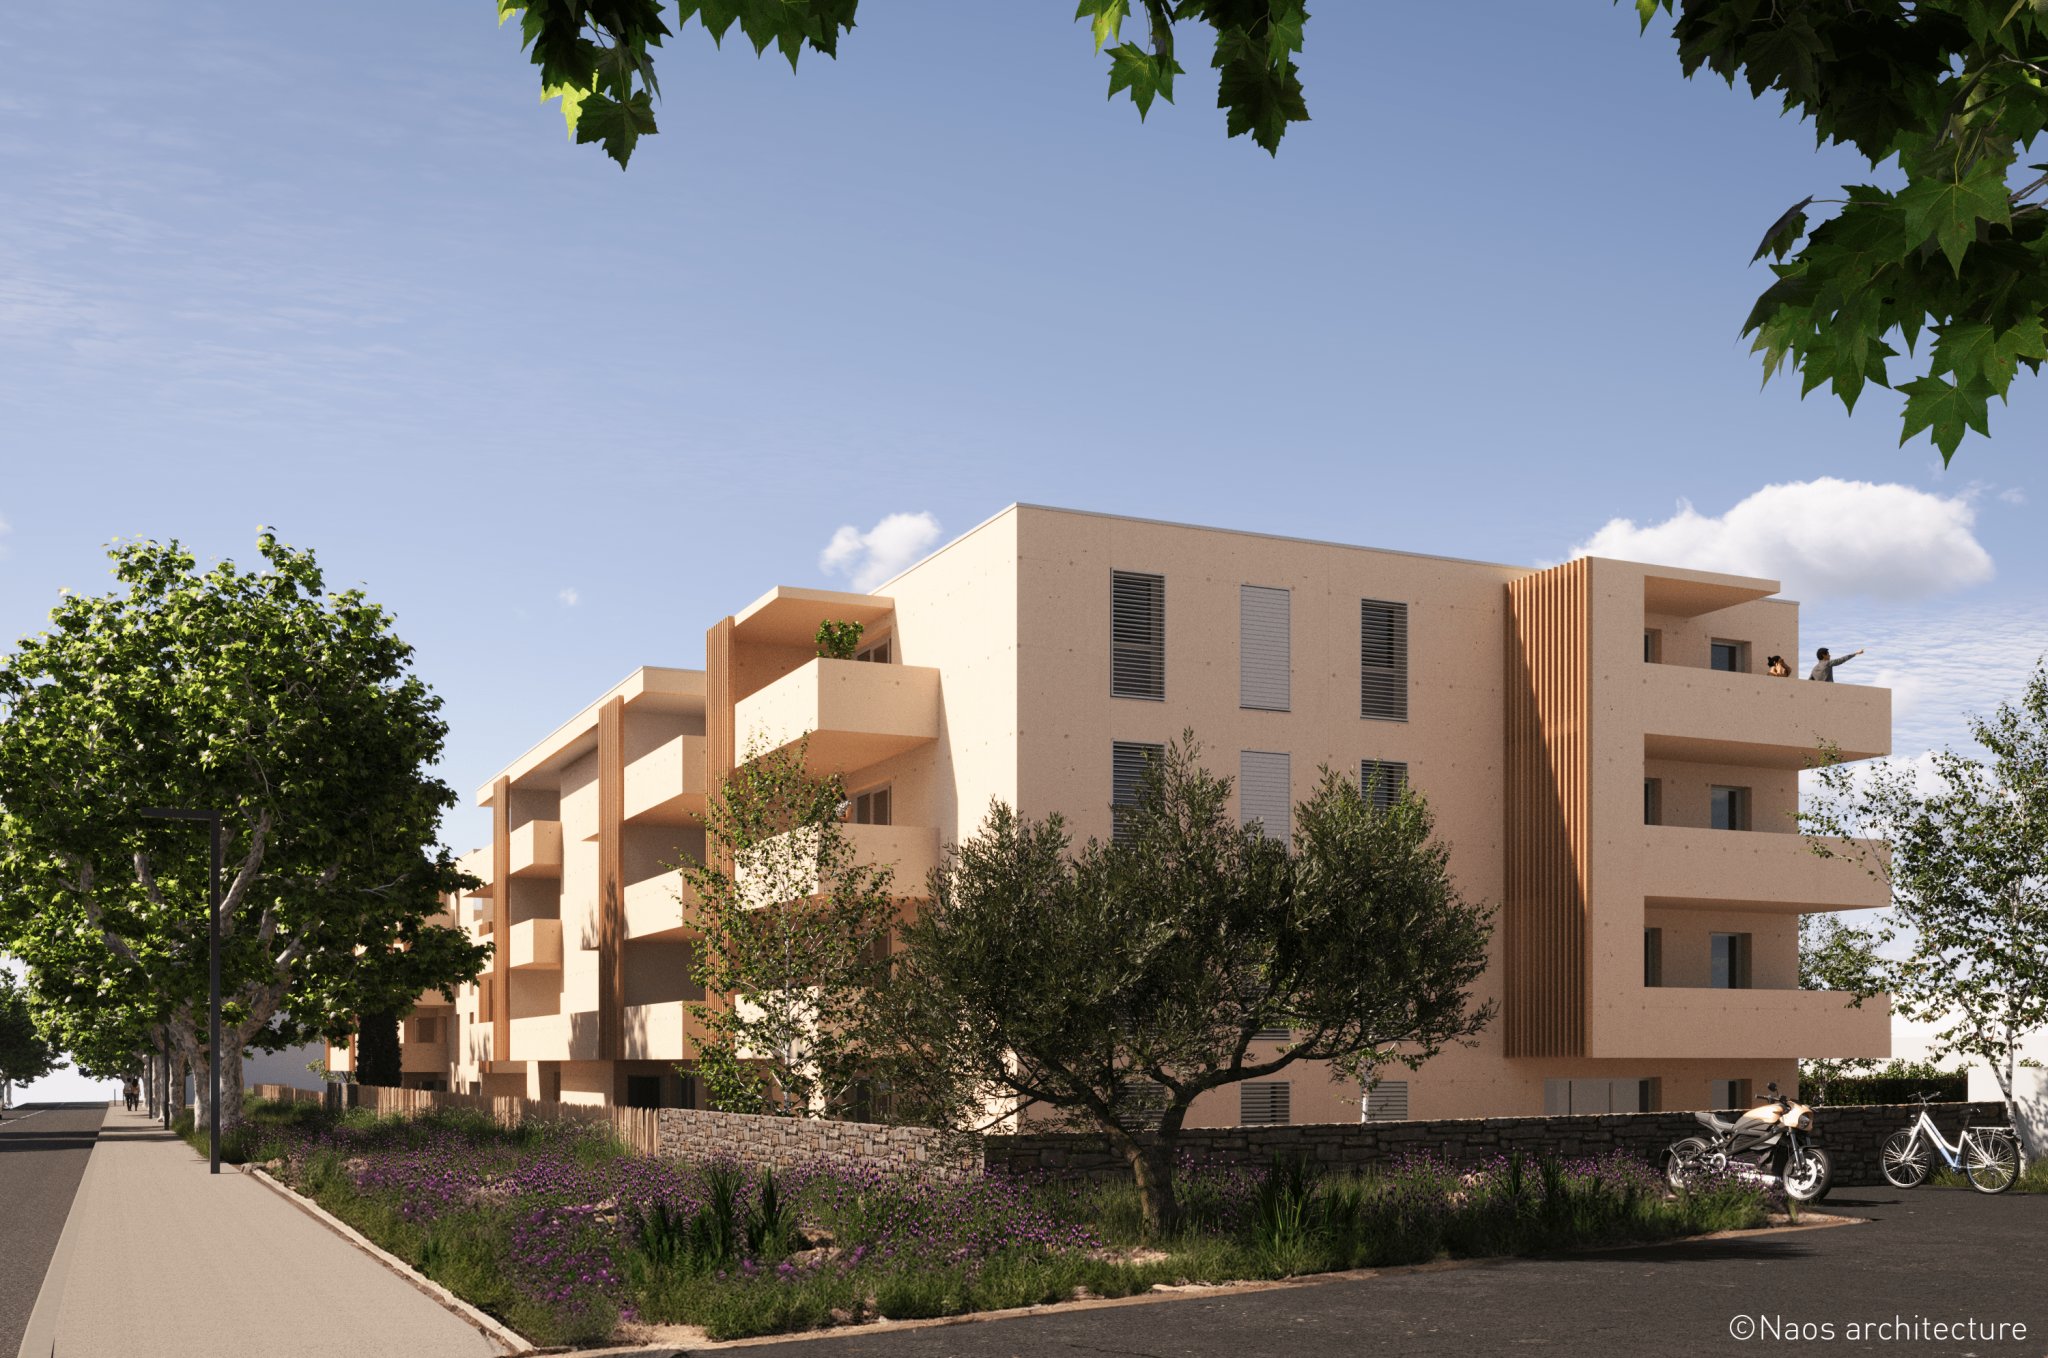 Programme immobilier neuf en PSLA à Gignac (2 à 4 pièces, 45 à 78 m²)